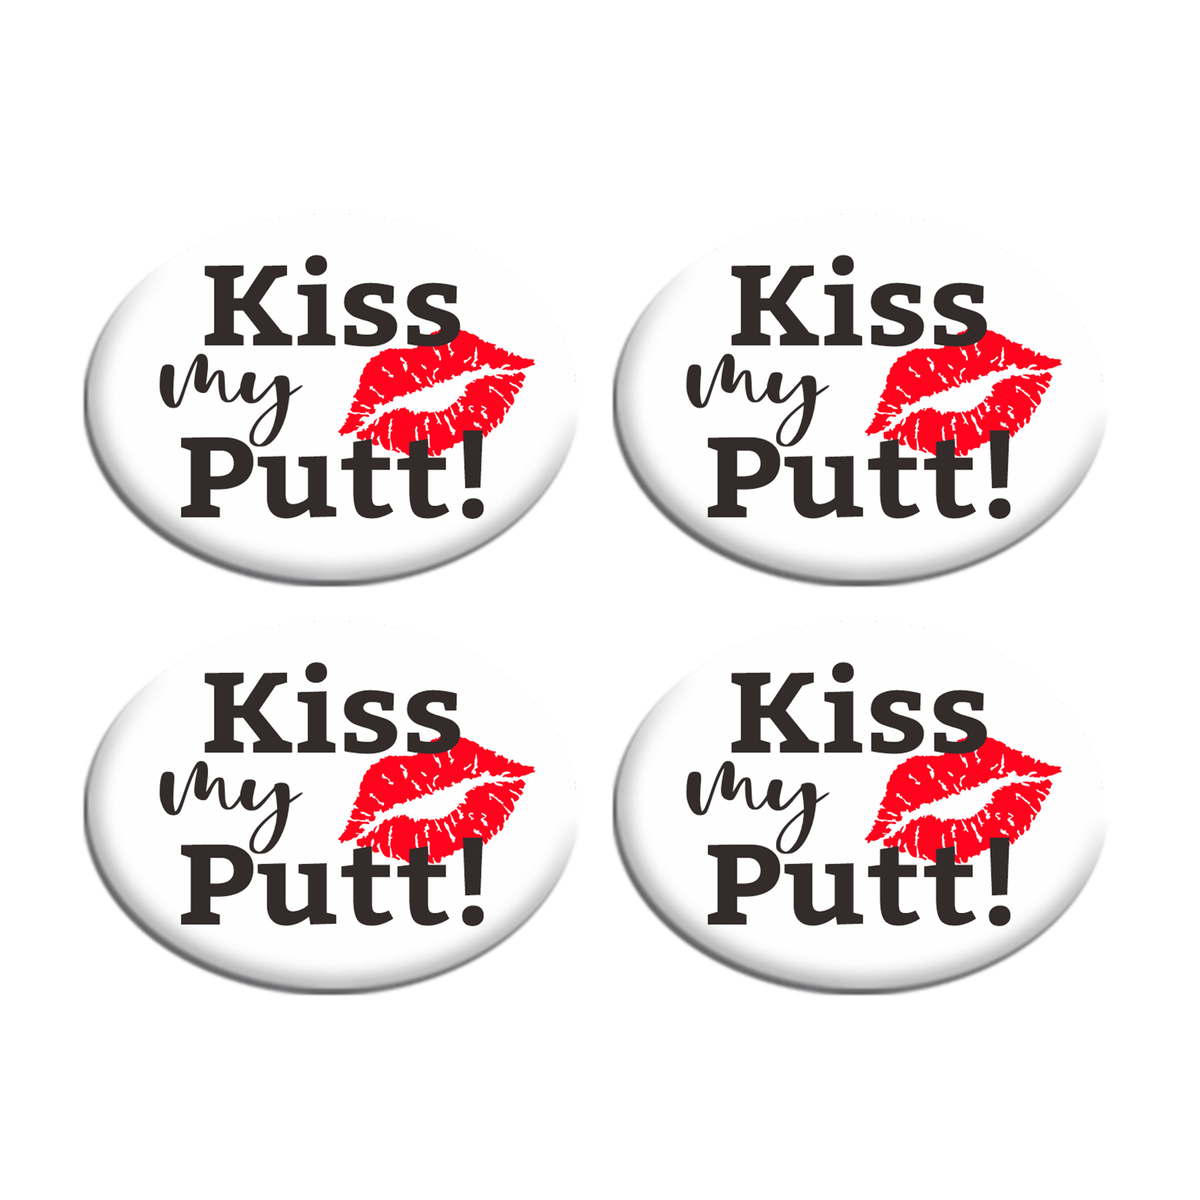 Kiss my Putt